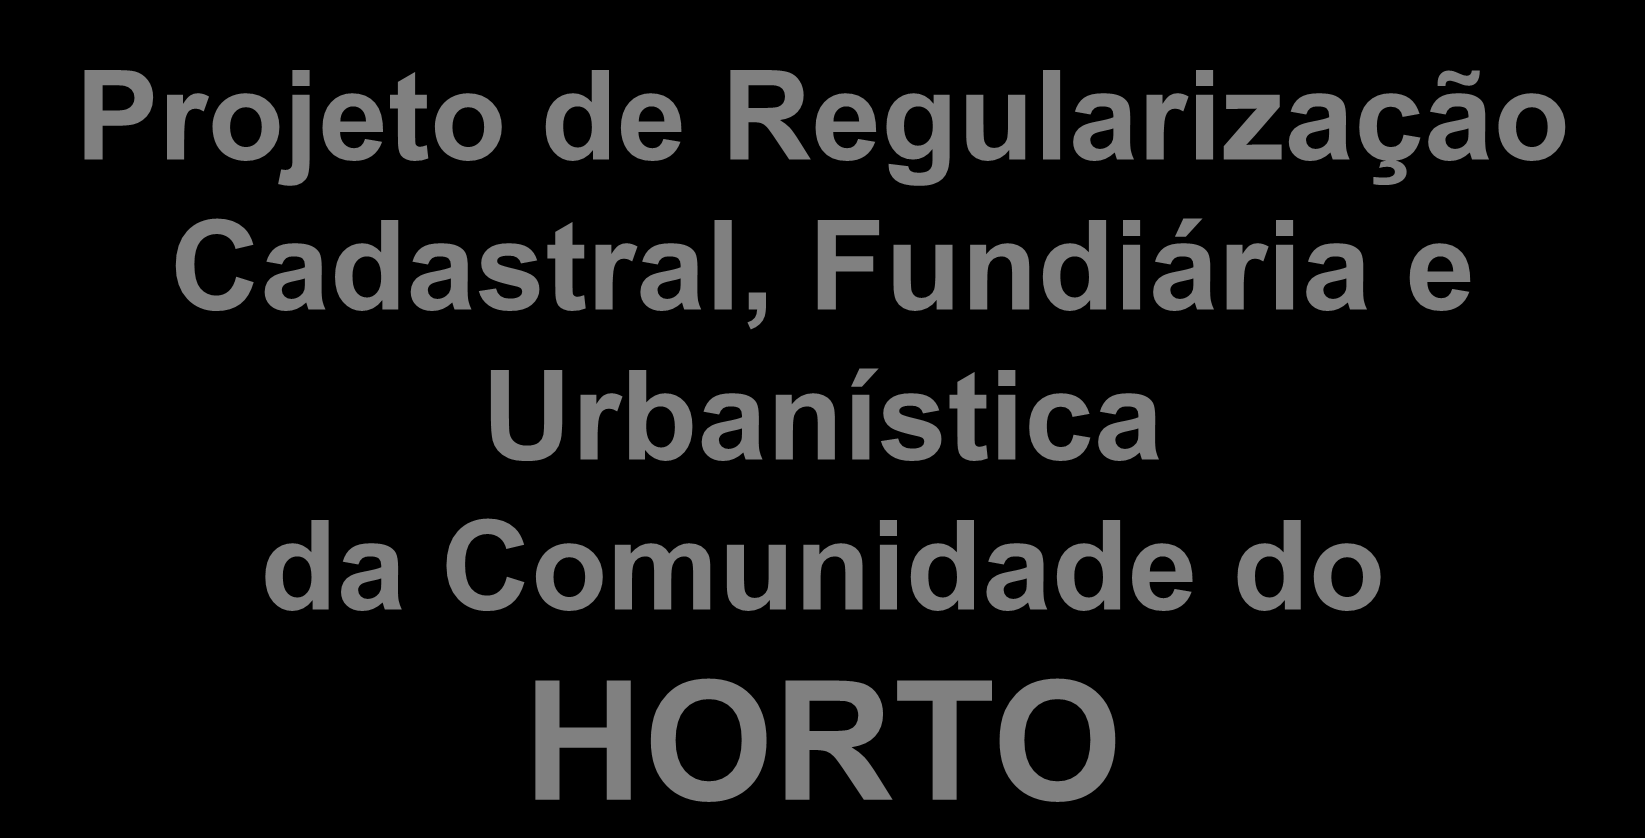 Projeto de Regularização Cadastral, Fundiária e Urbanística da Comunidade do HORTO Ubiratan de Souza Universidade Federal do Rio de Janeiro